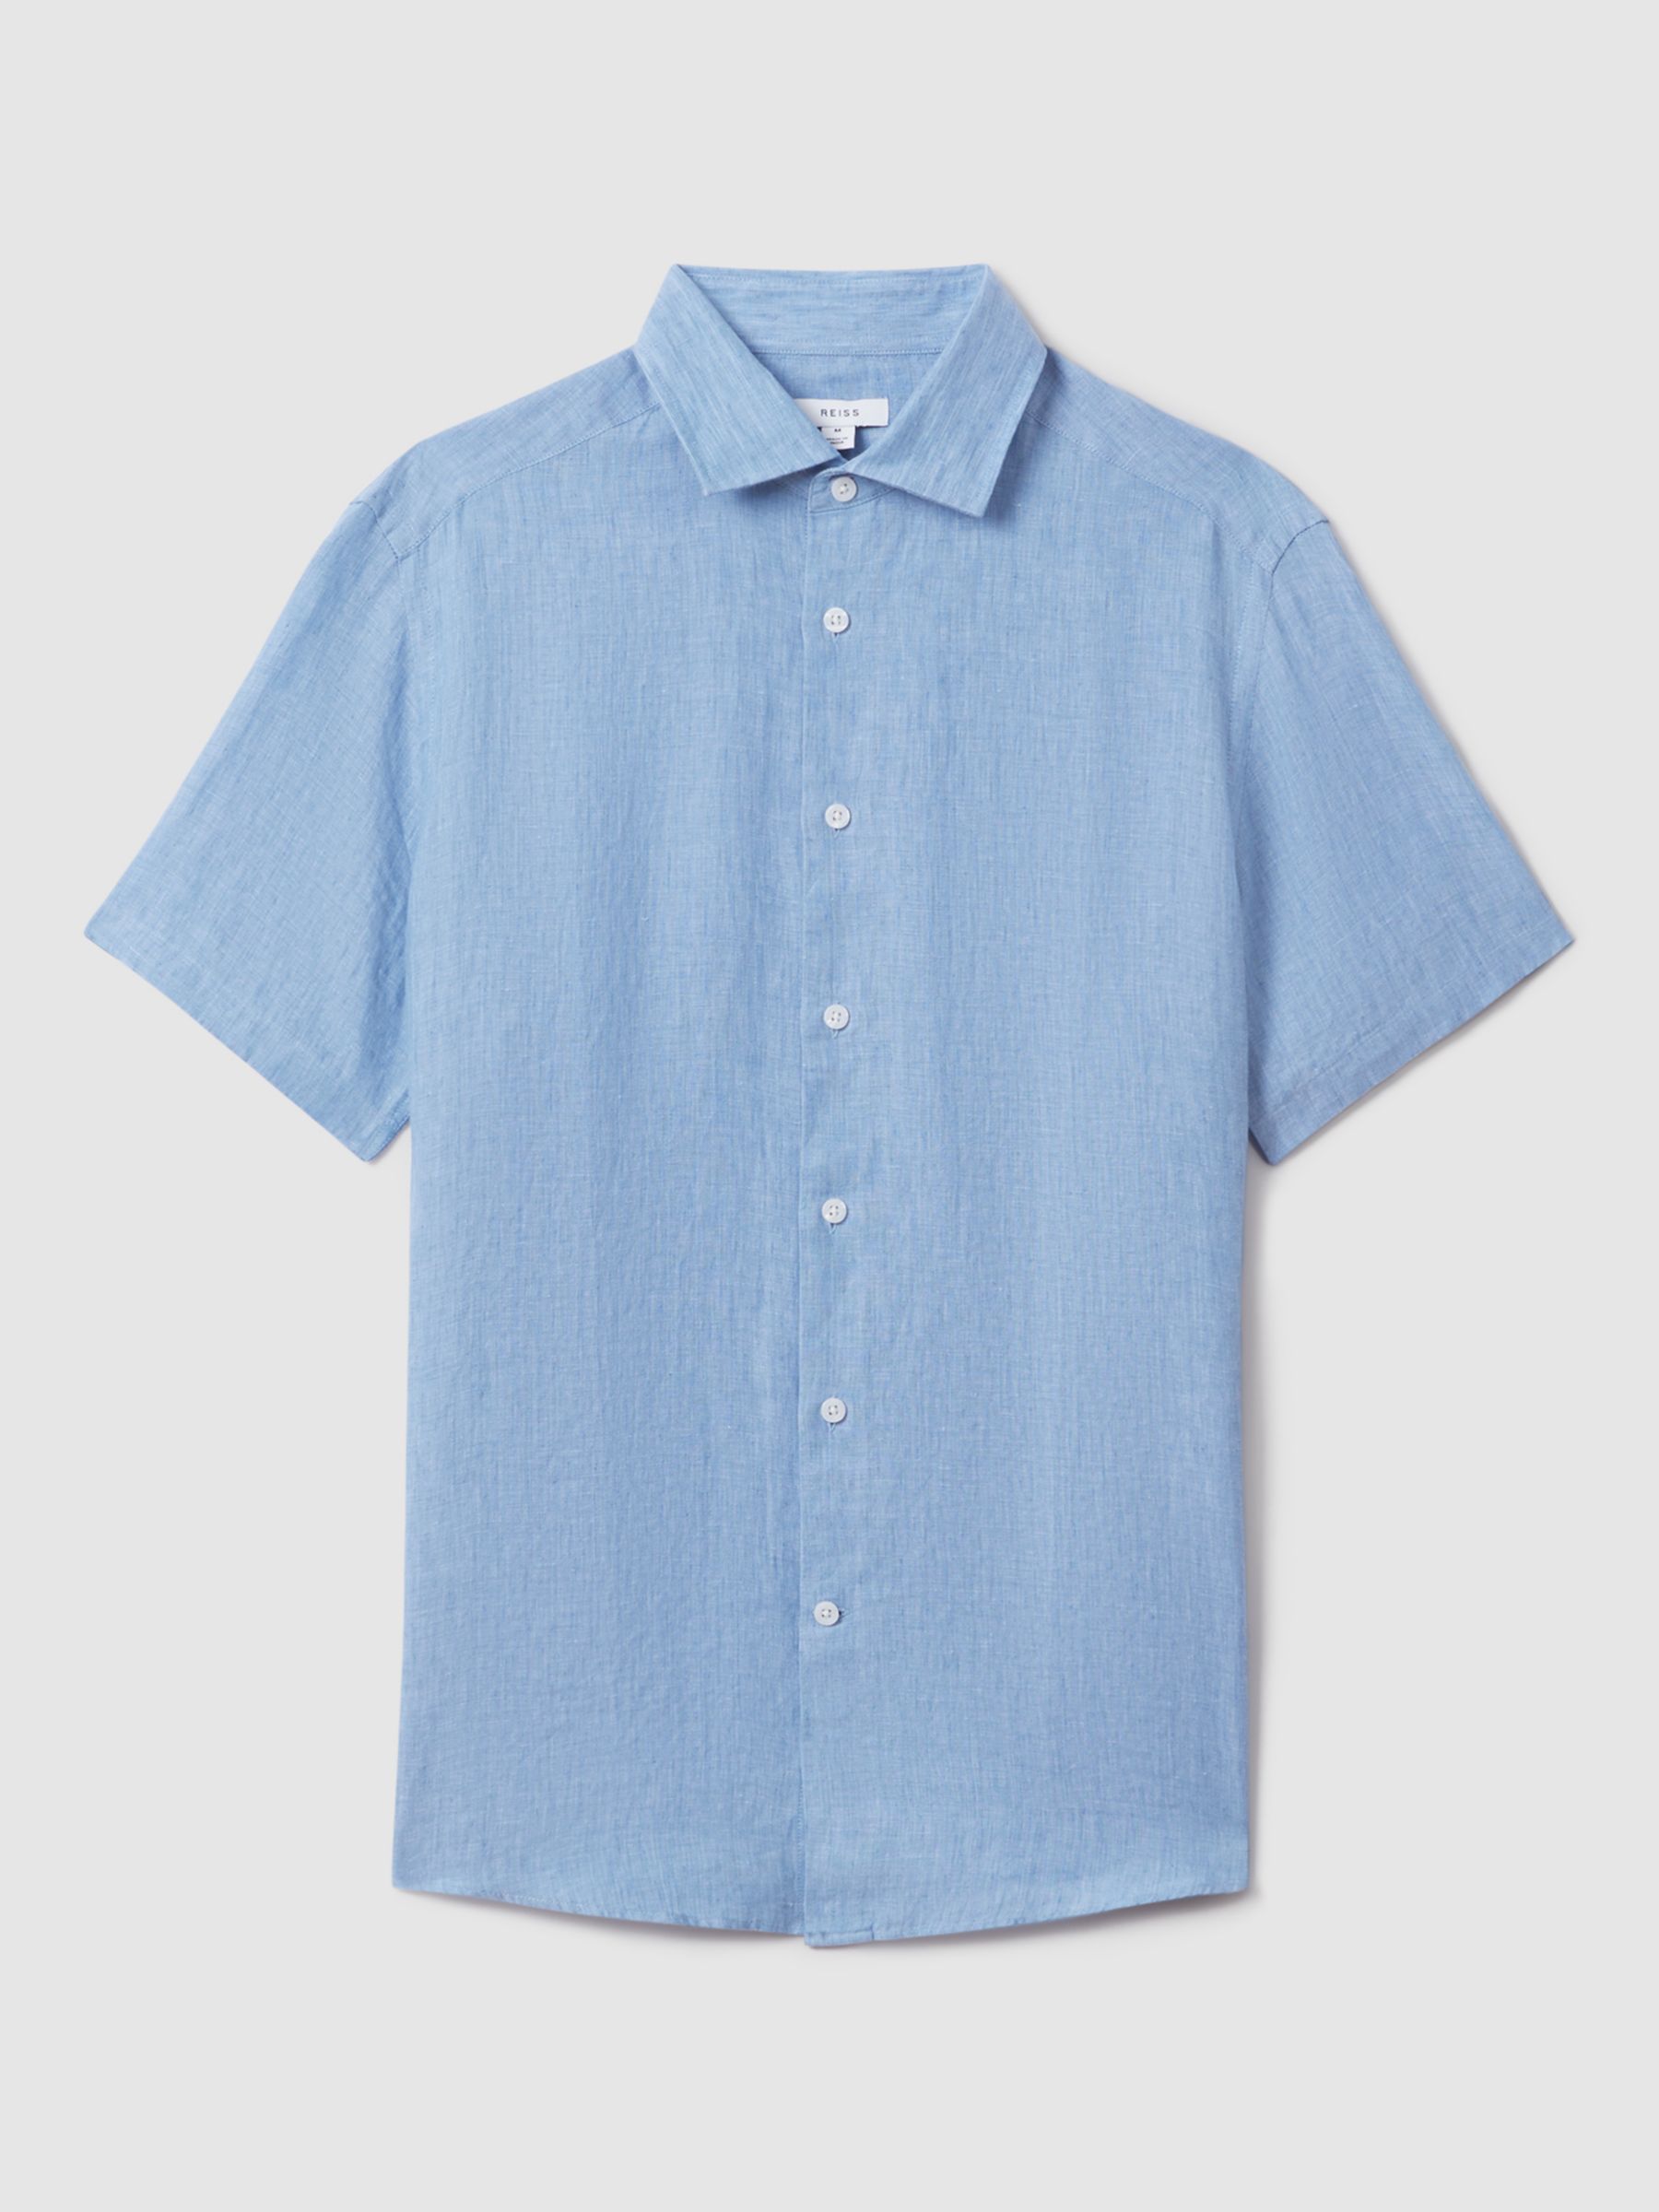 Reiss Holiday Linen Regular Fit Shirt, Sky Blue, XS